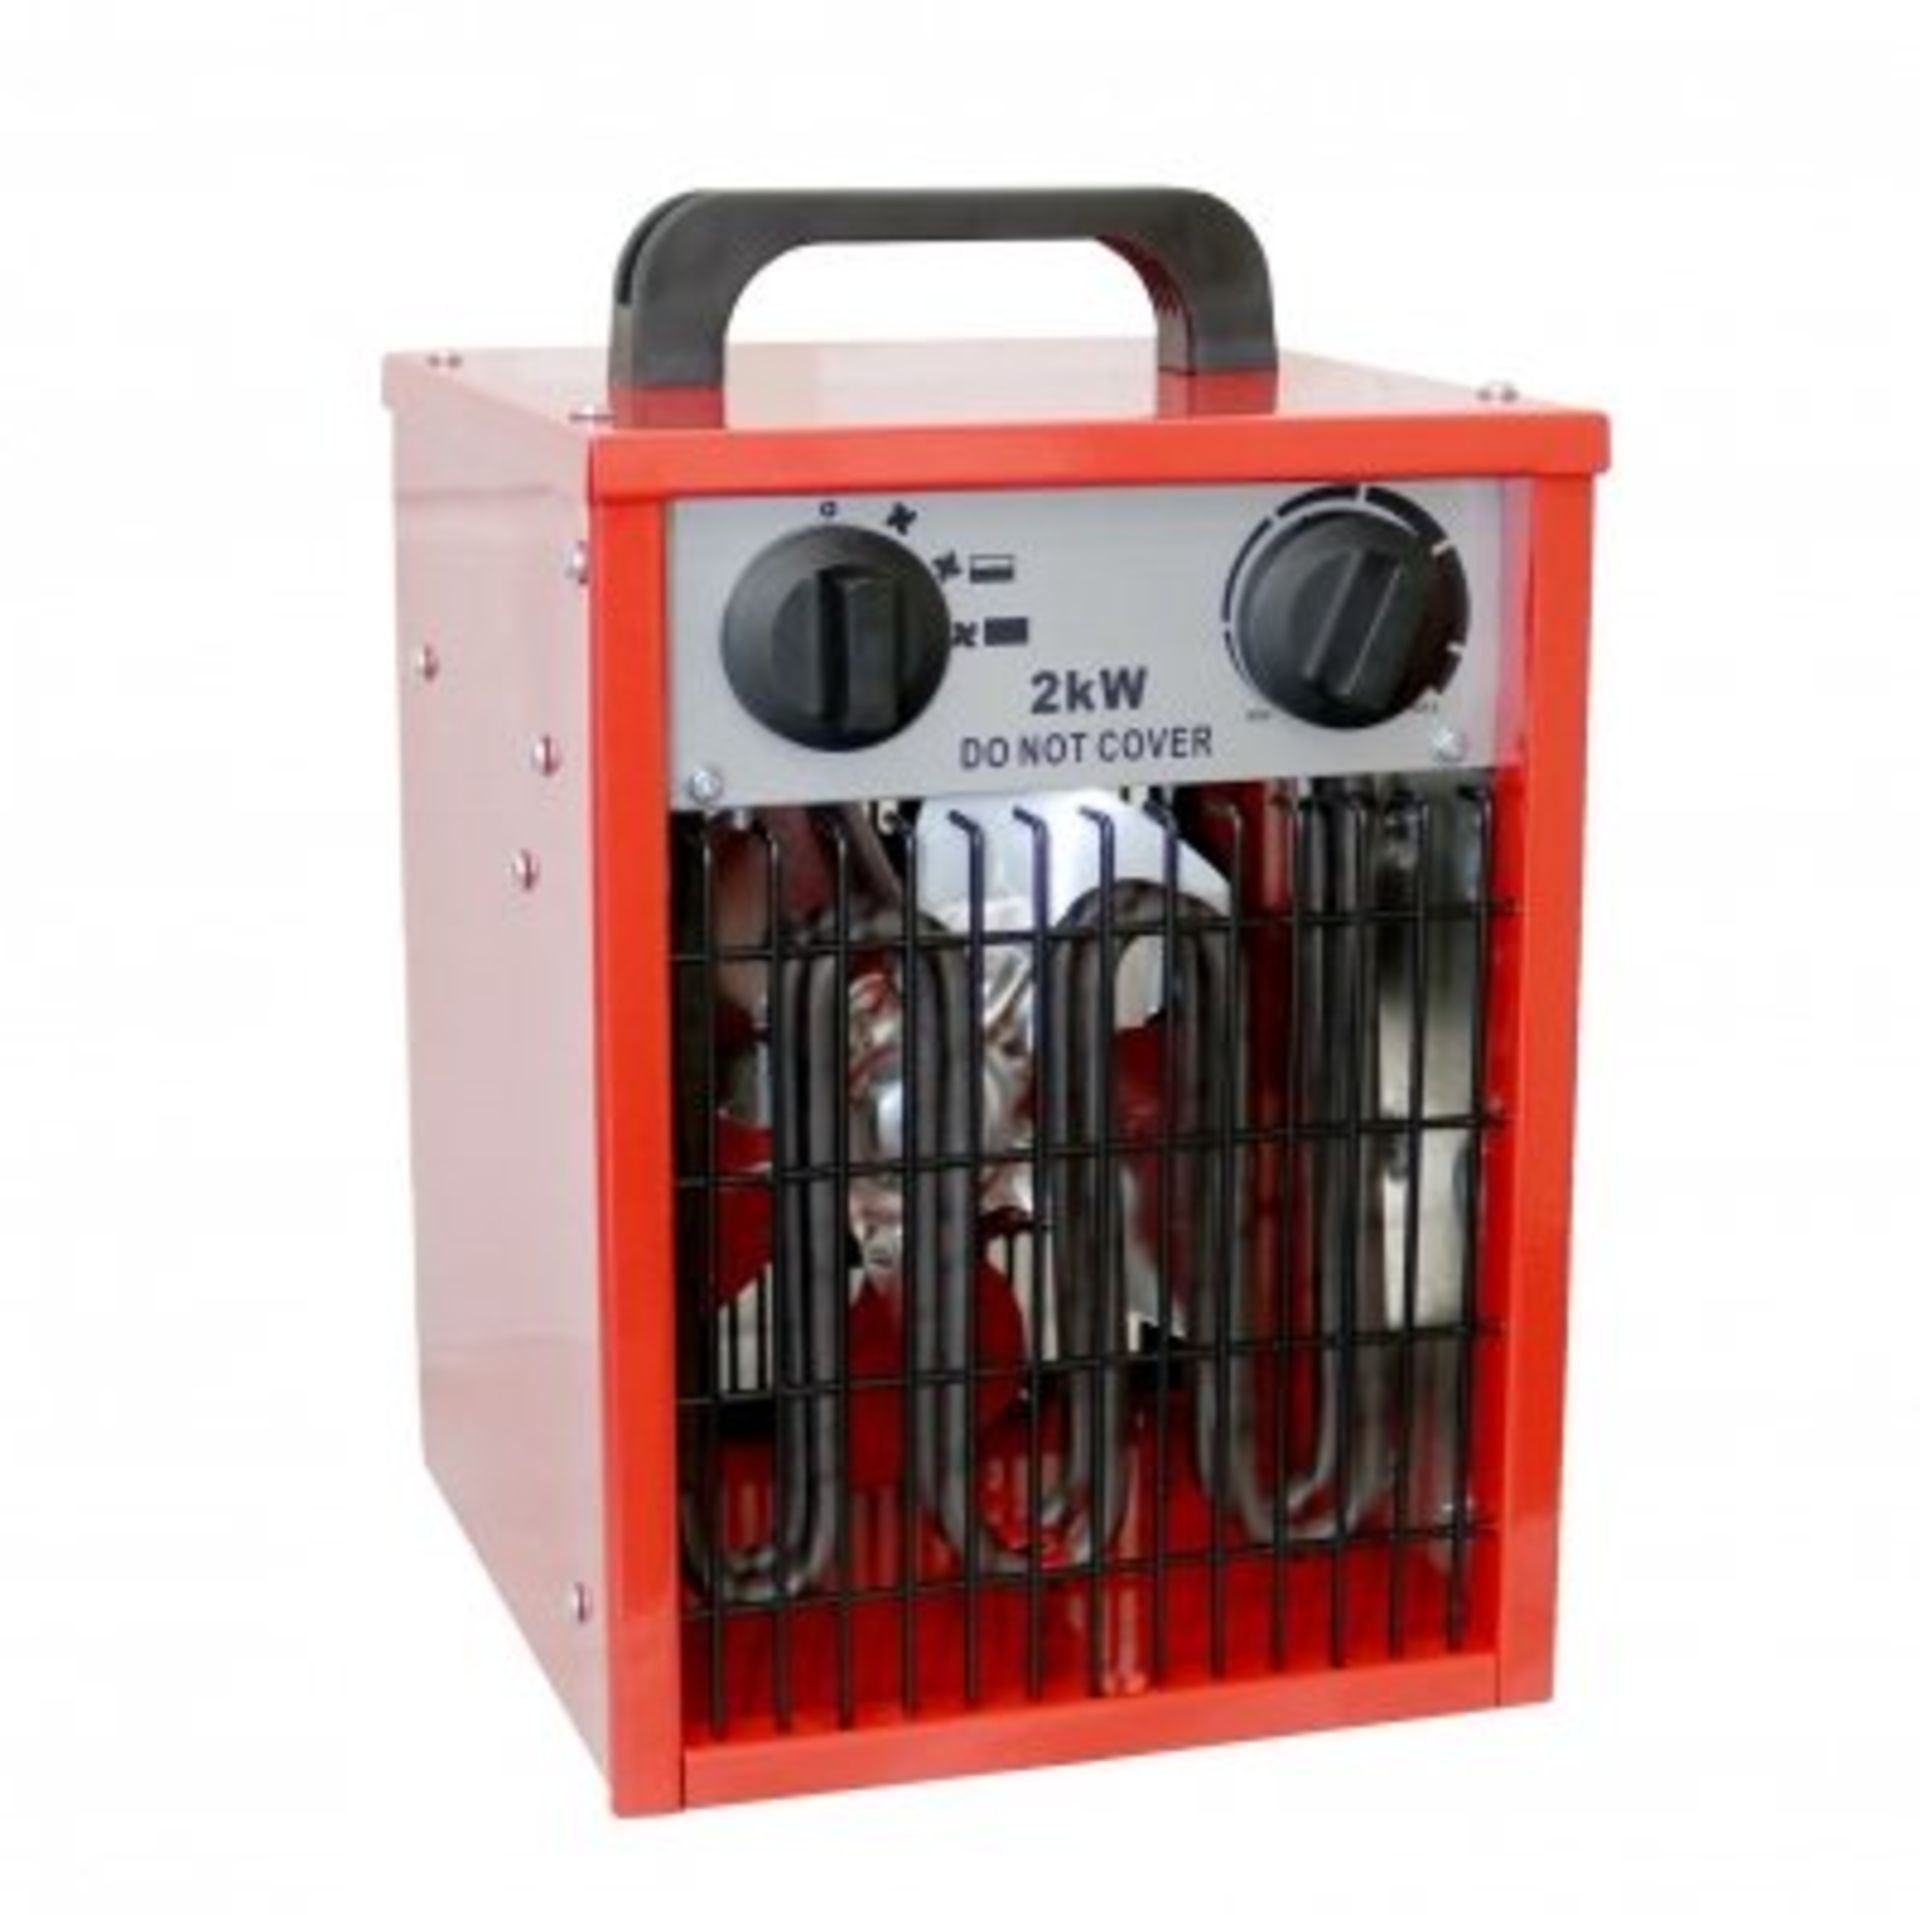 (LF34) 2kW Electric Industrial Workshop Garage Space Fan Heater The industrial heater is per...